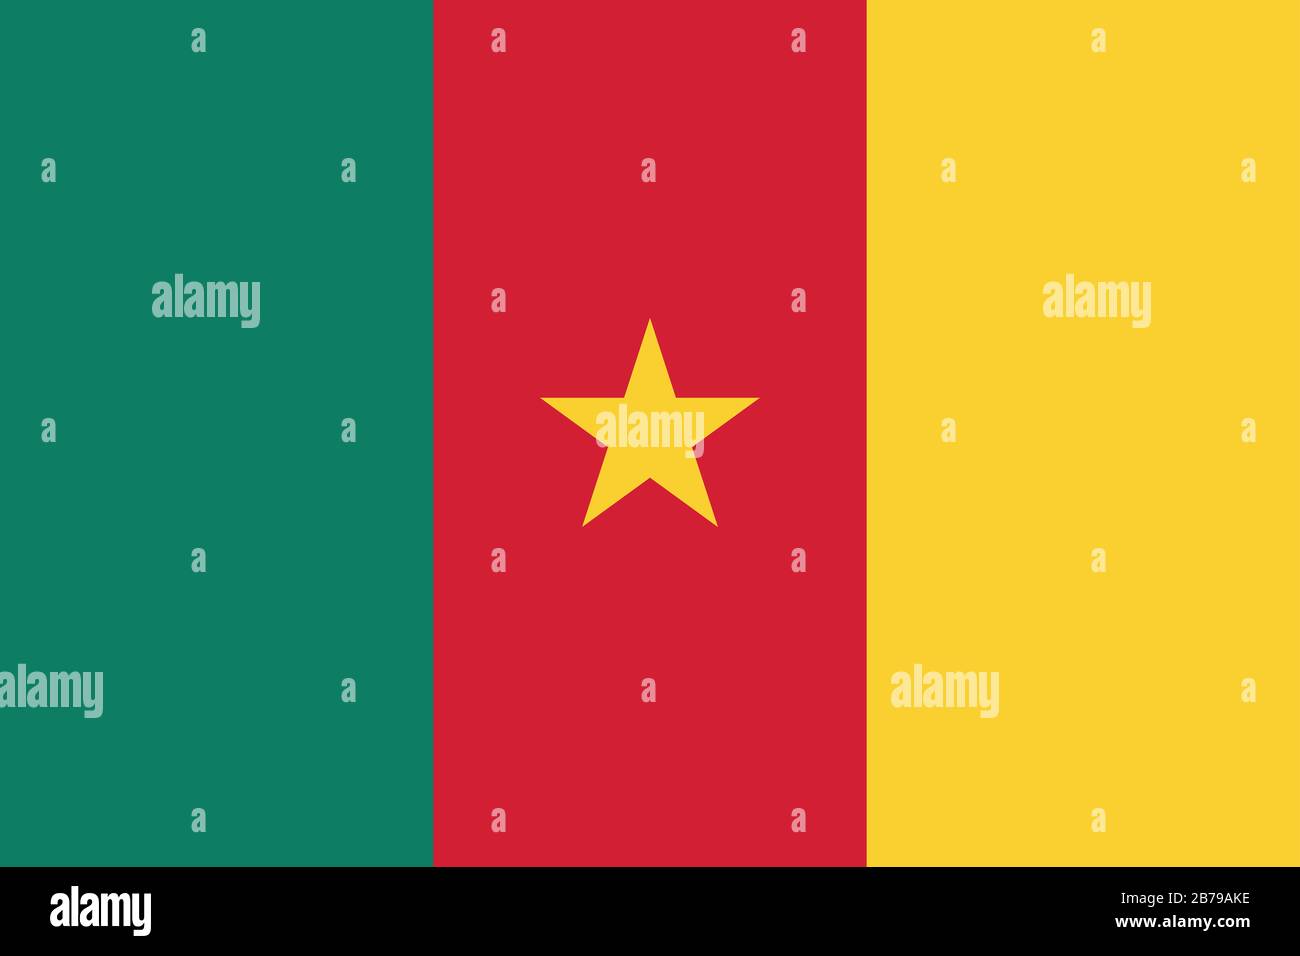 Flagge Kameruns - Standardverhältnis der kamerunischen Flagge - True RGB-Farbmodus Stockfoto